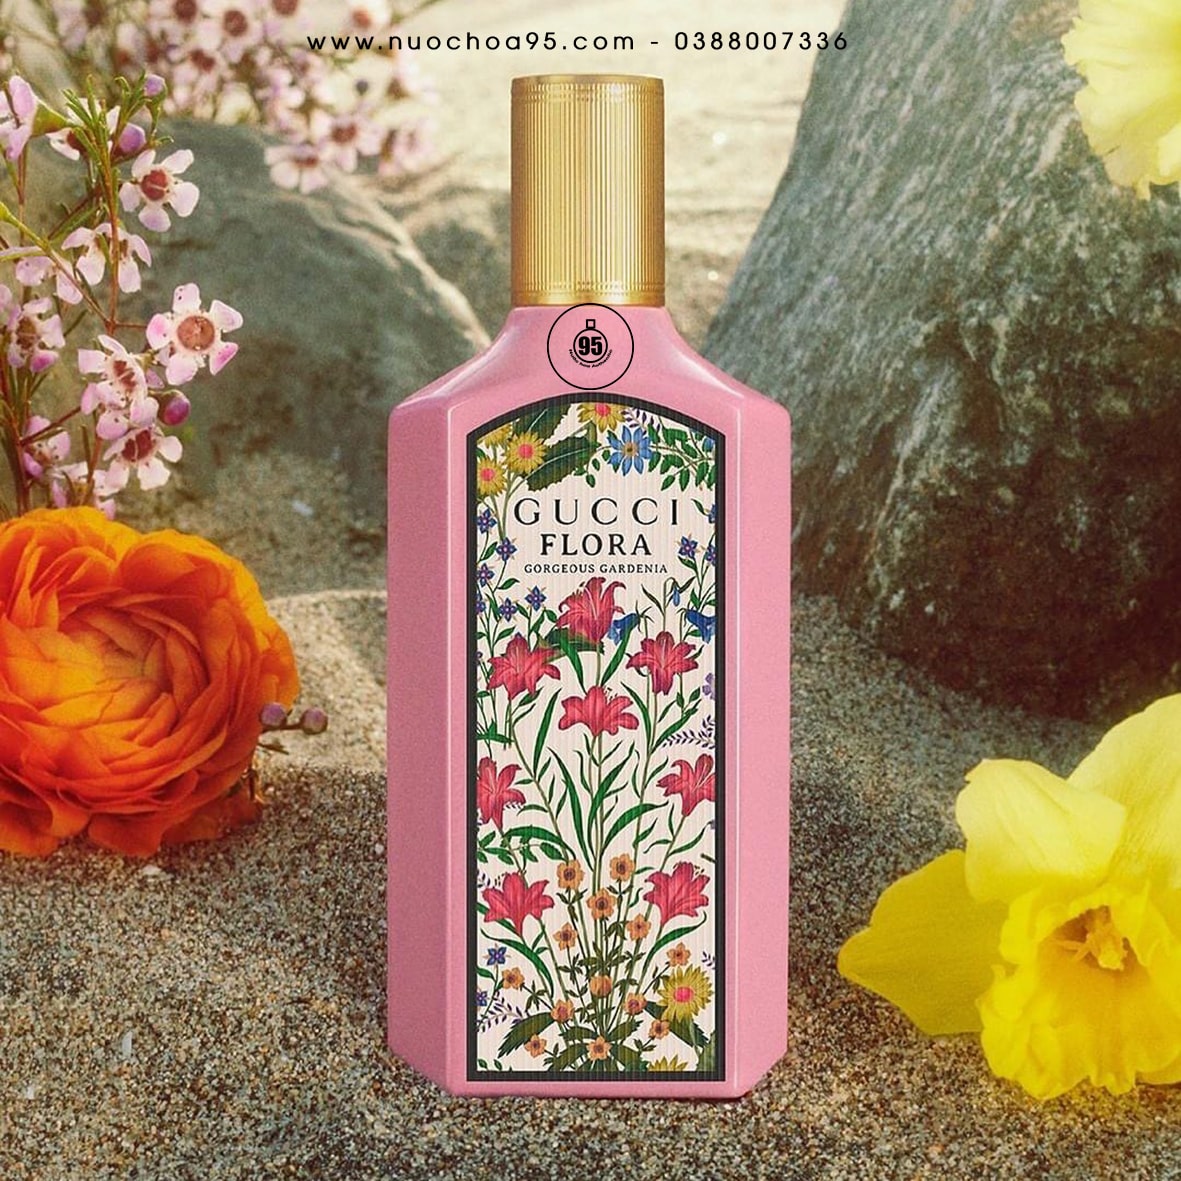 Nước hoa Gucci Flora Gorgeous Gardenia Eau de Parfum - Ảnh 2